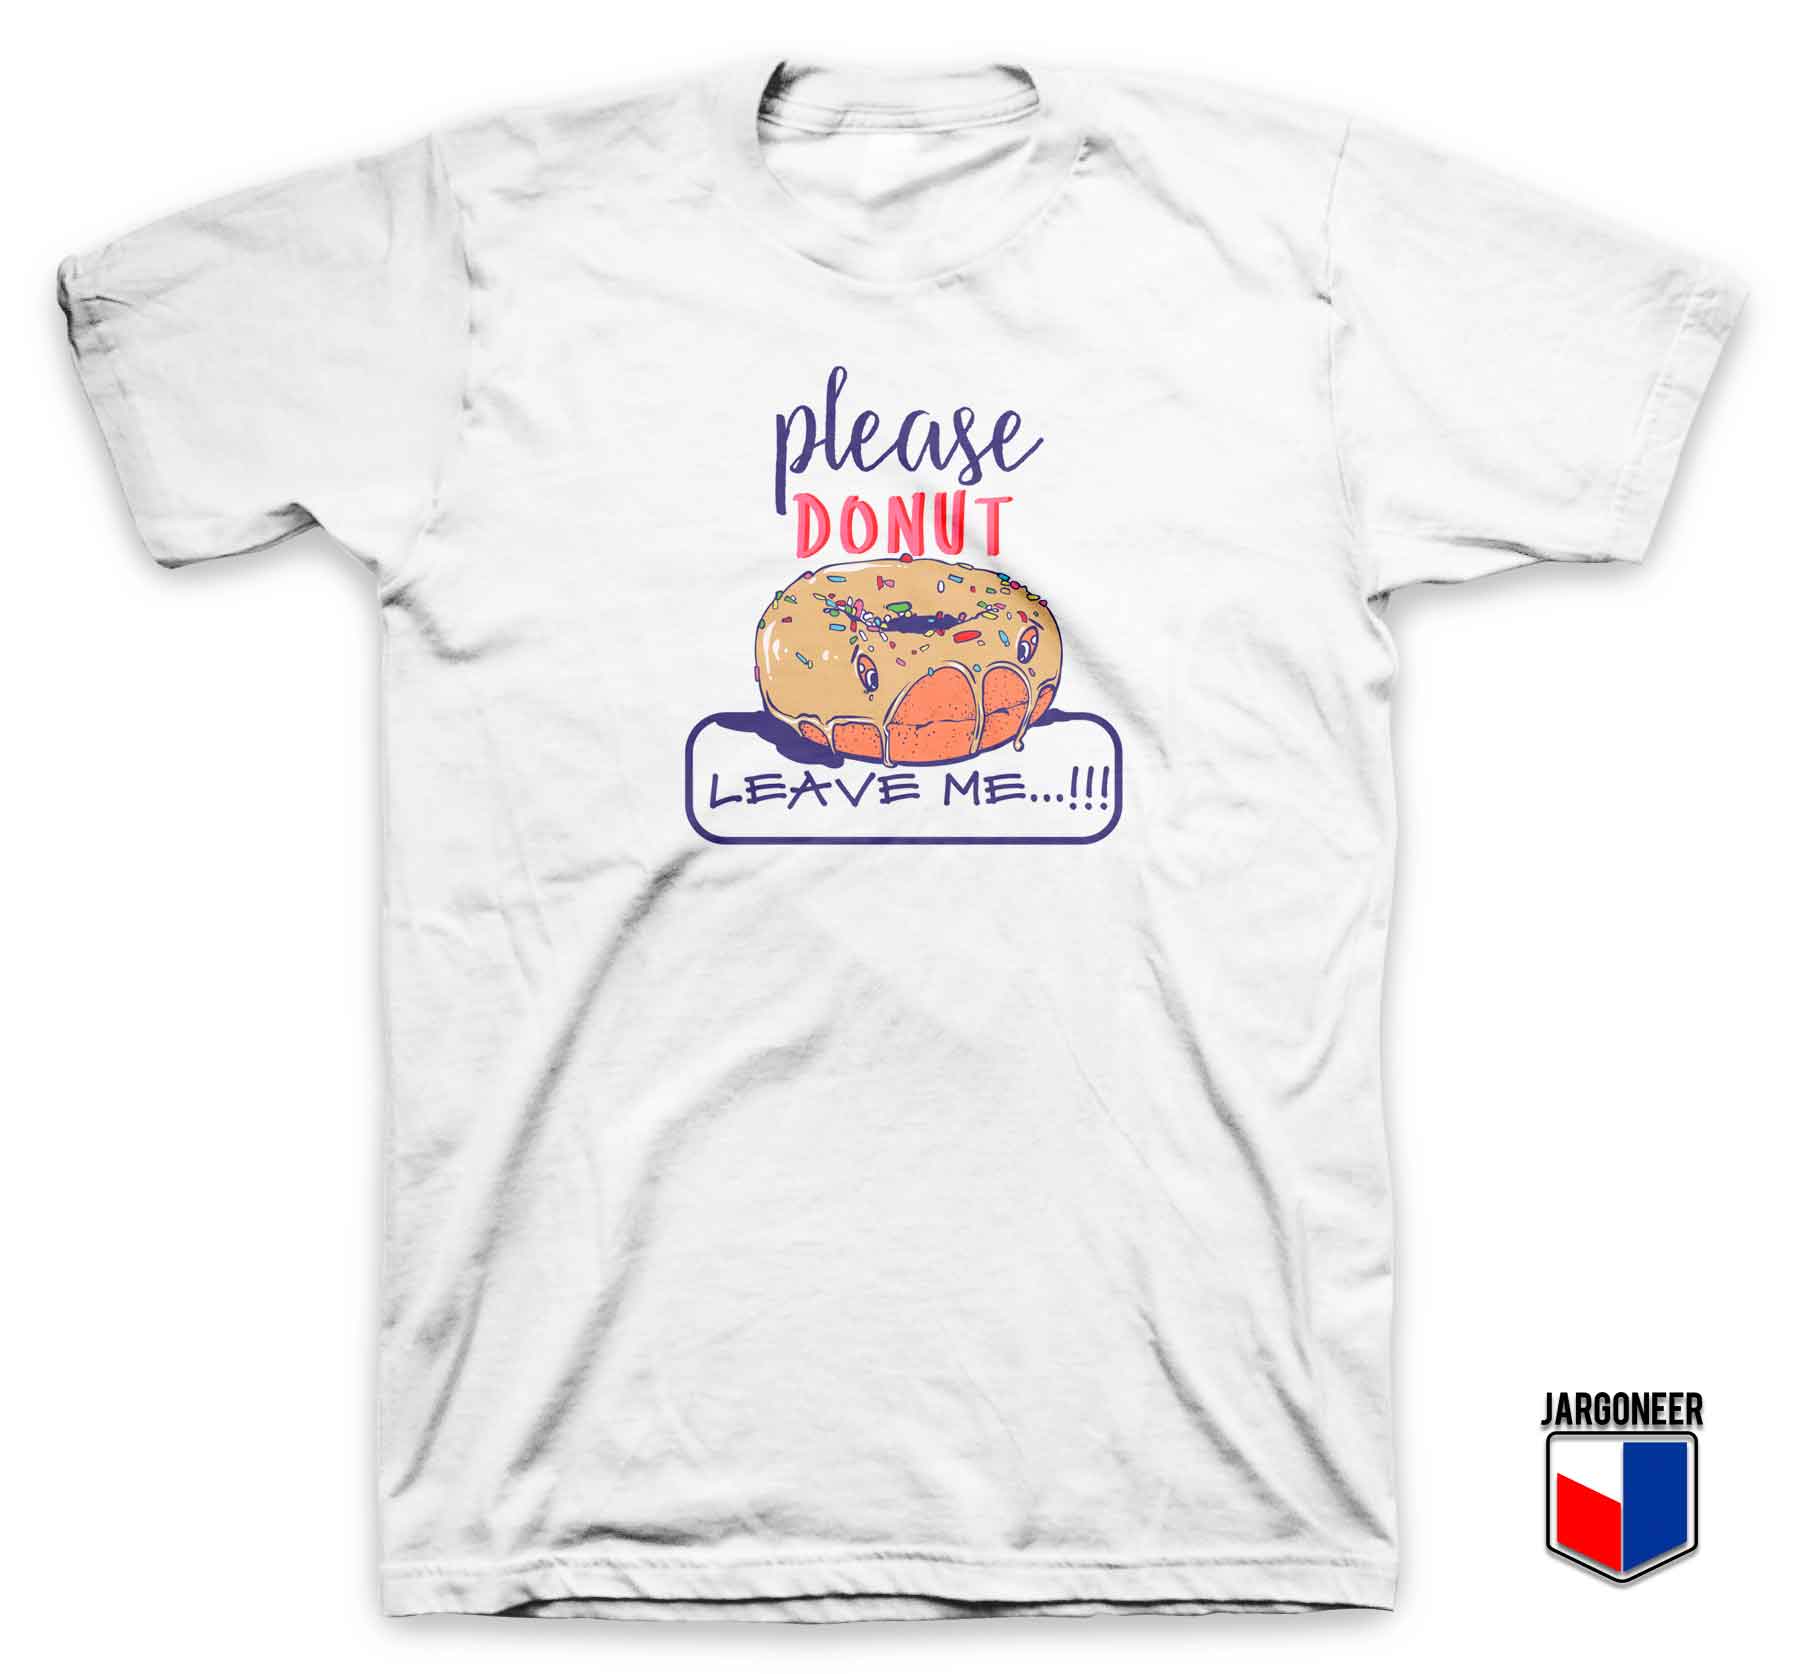 Please Donut Leave Me T Shirt - Shop Unique Graphic Cool Shirt Designs